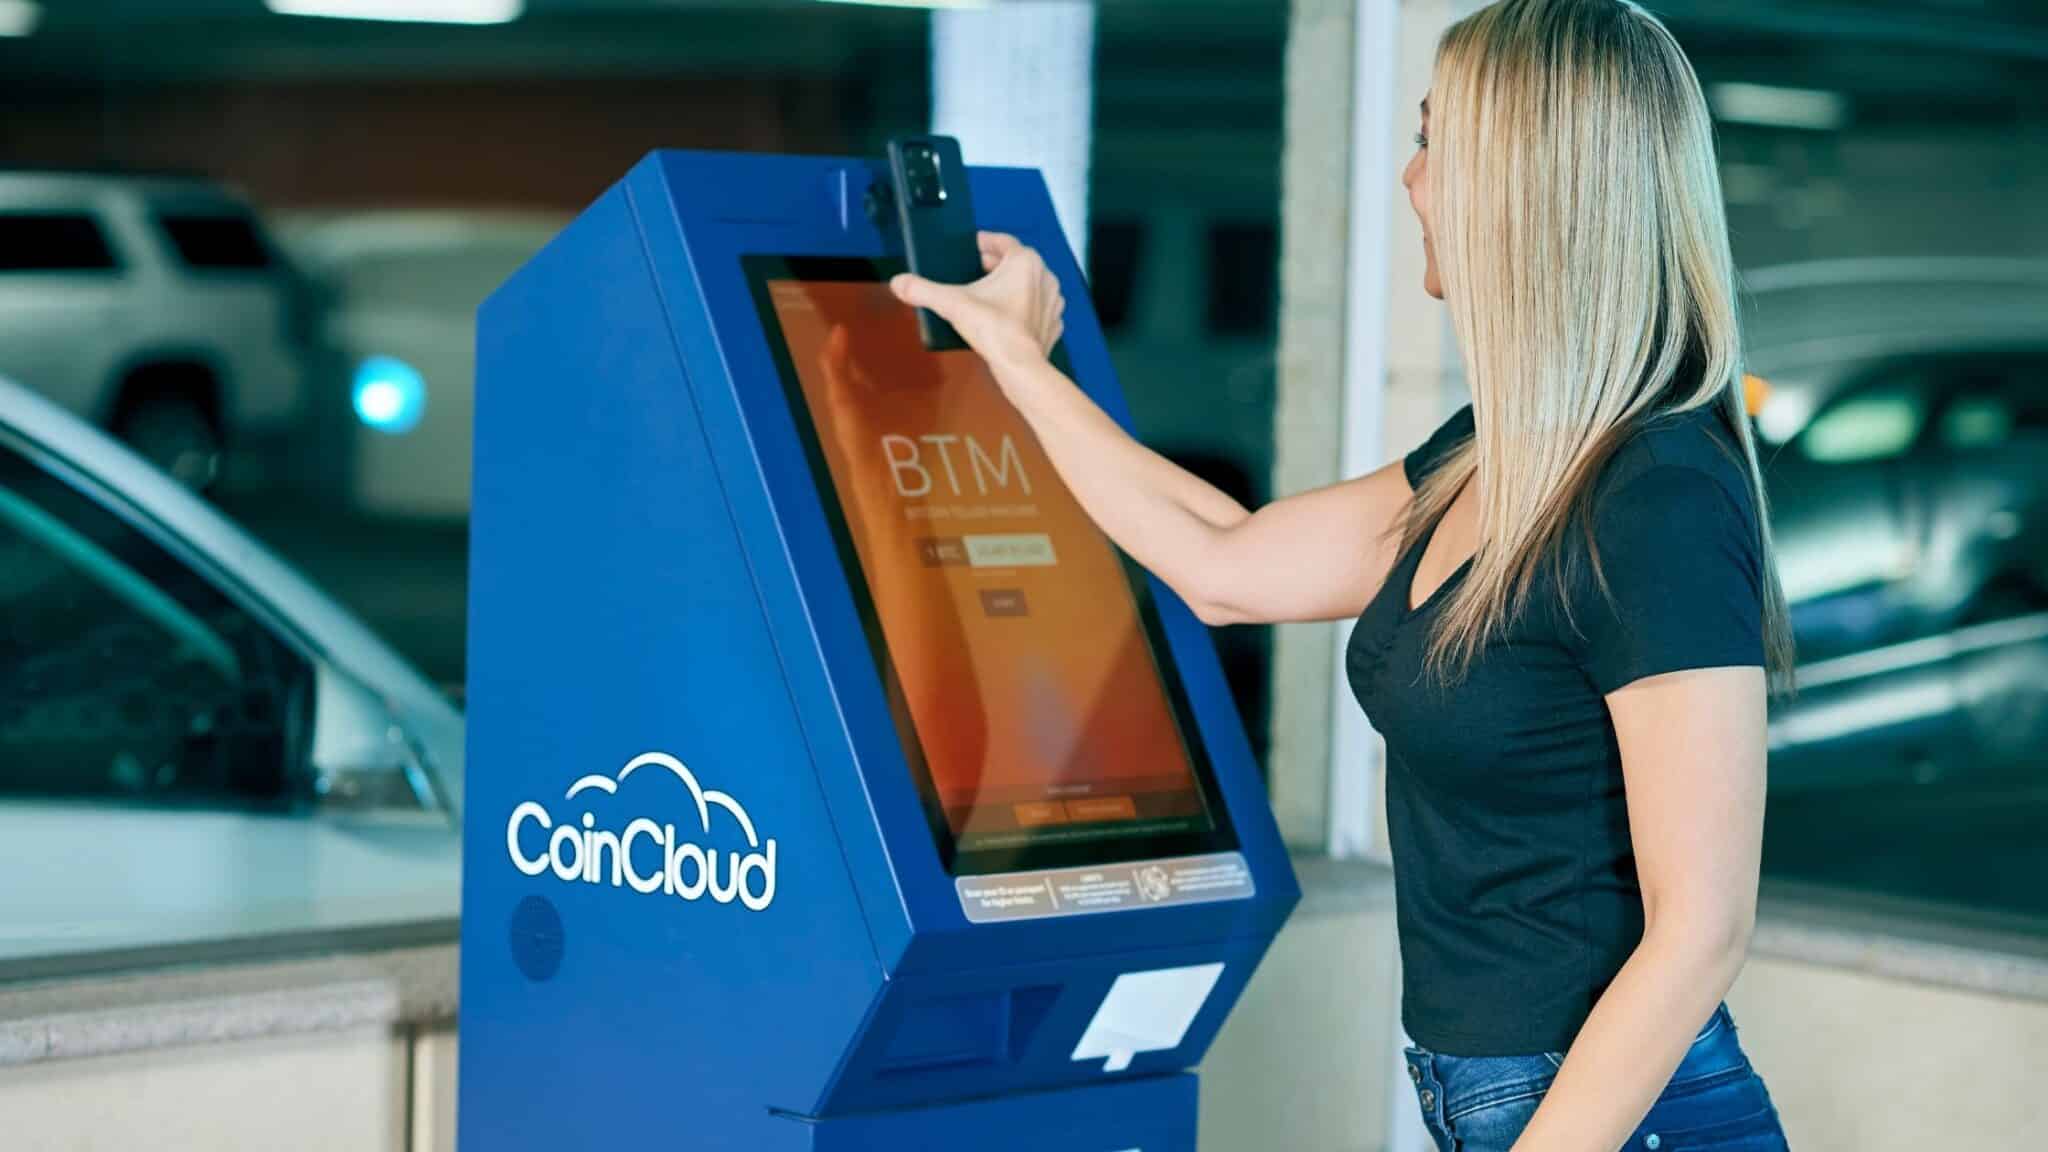 Se instalarán más de 50 cajeros automáticos criptográficos en supermercados hispanos de todo Estados Unidos